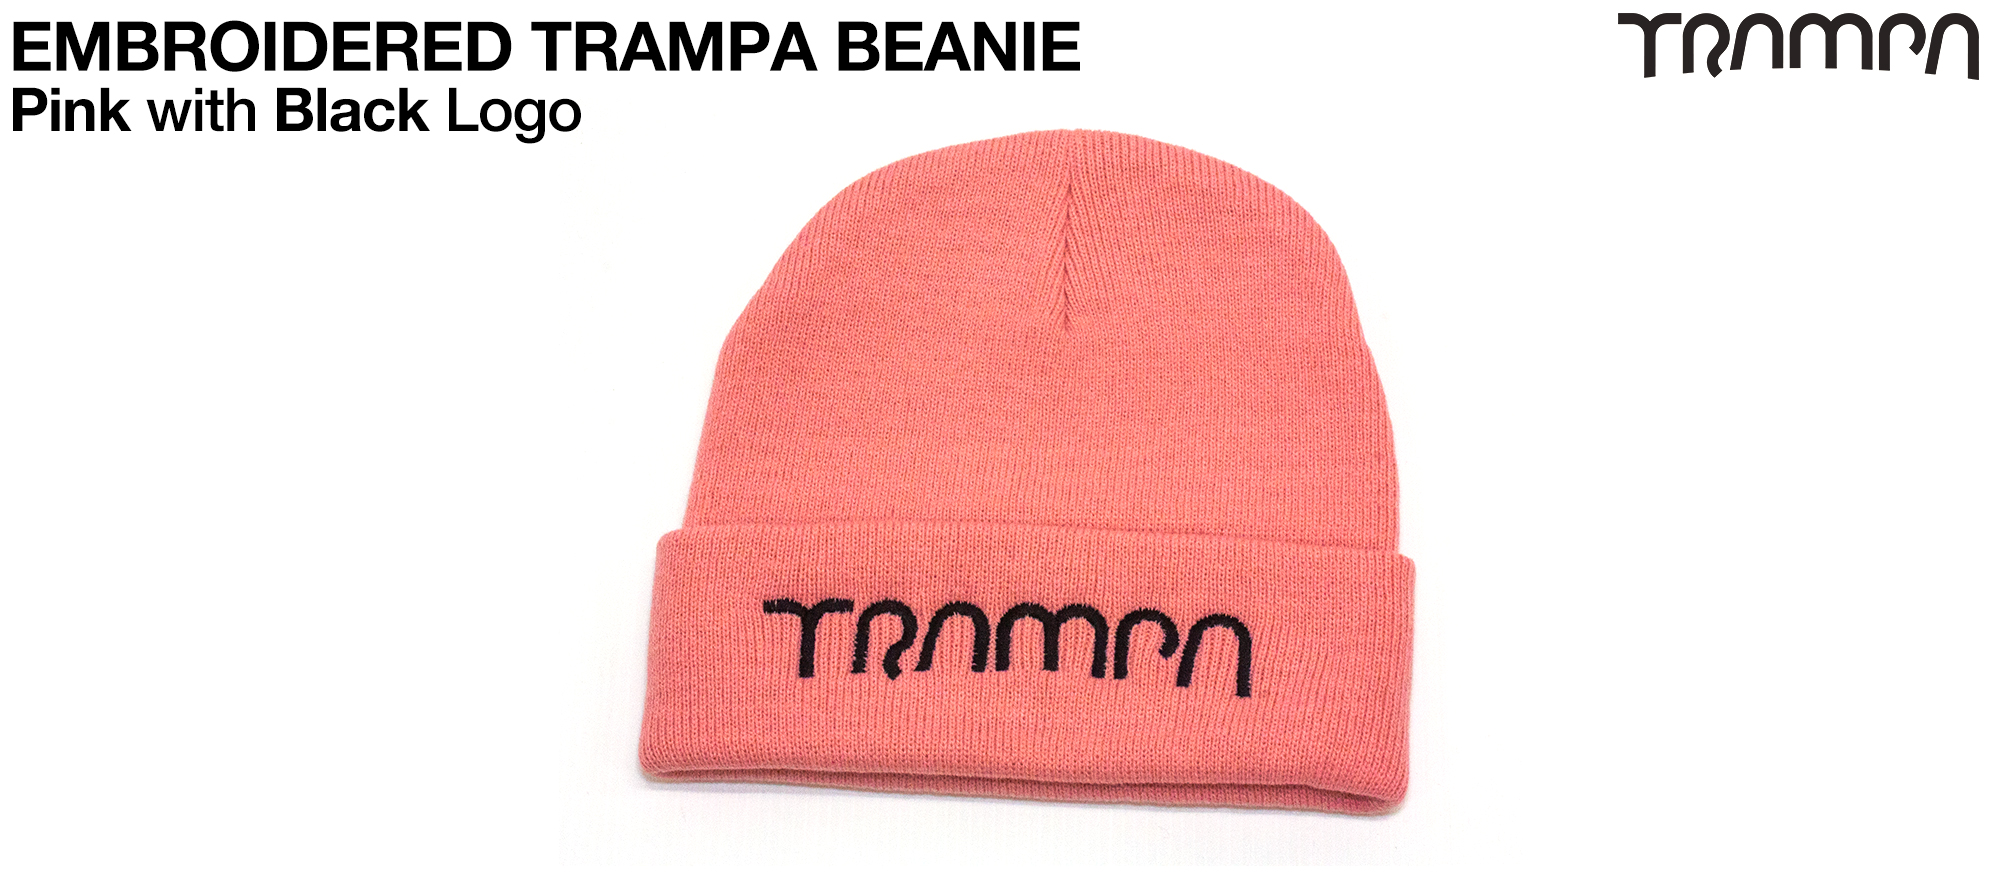 Pansie PINK Woolly hat with BLACK TRAMPA logo